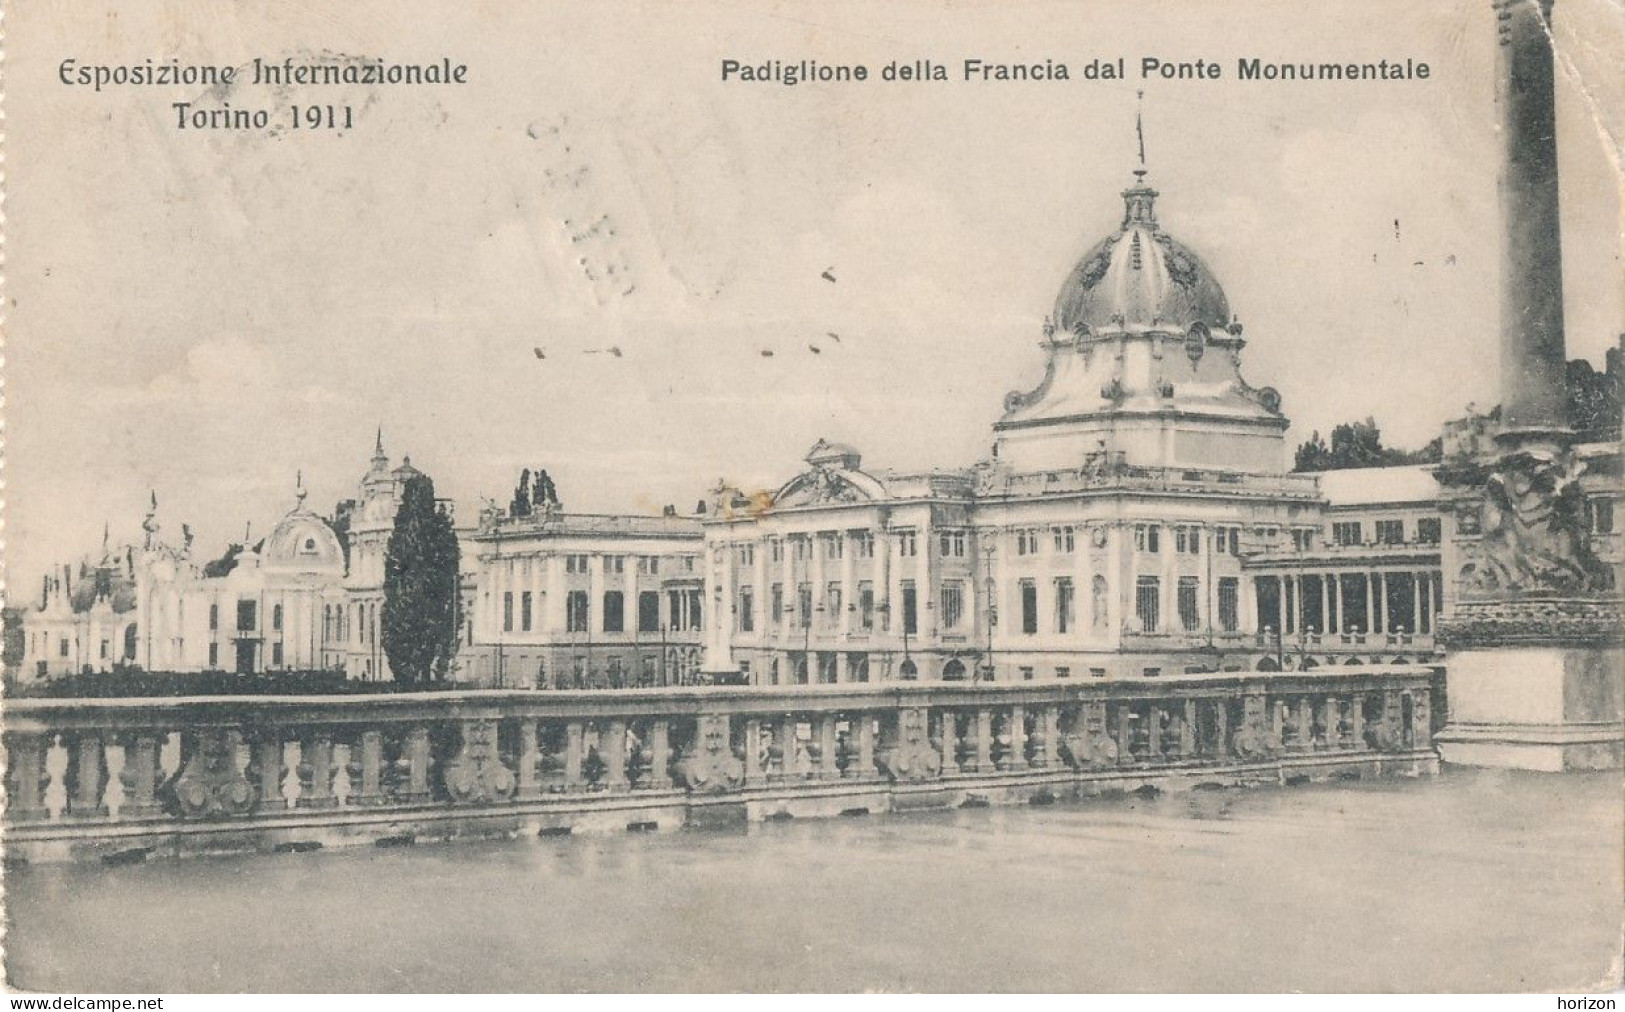 2f.256  TORINO - Esposizione Internazionale 1911 - Padiglione Della Francia Dal Ponte Monumentale - 1911 - Exposiciones